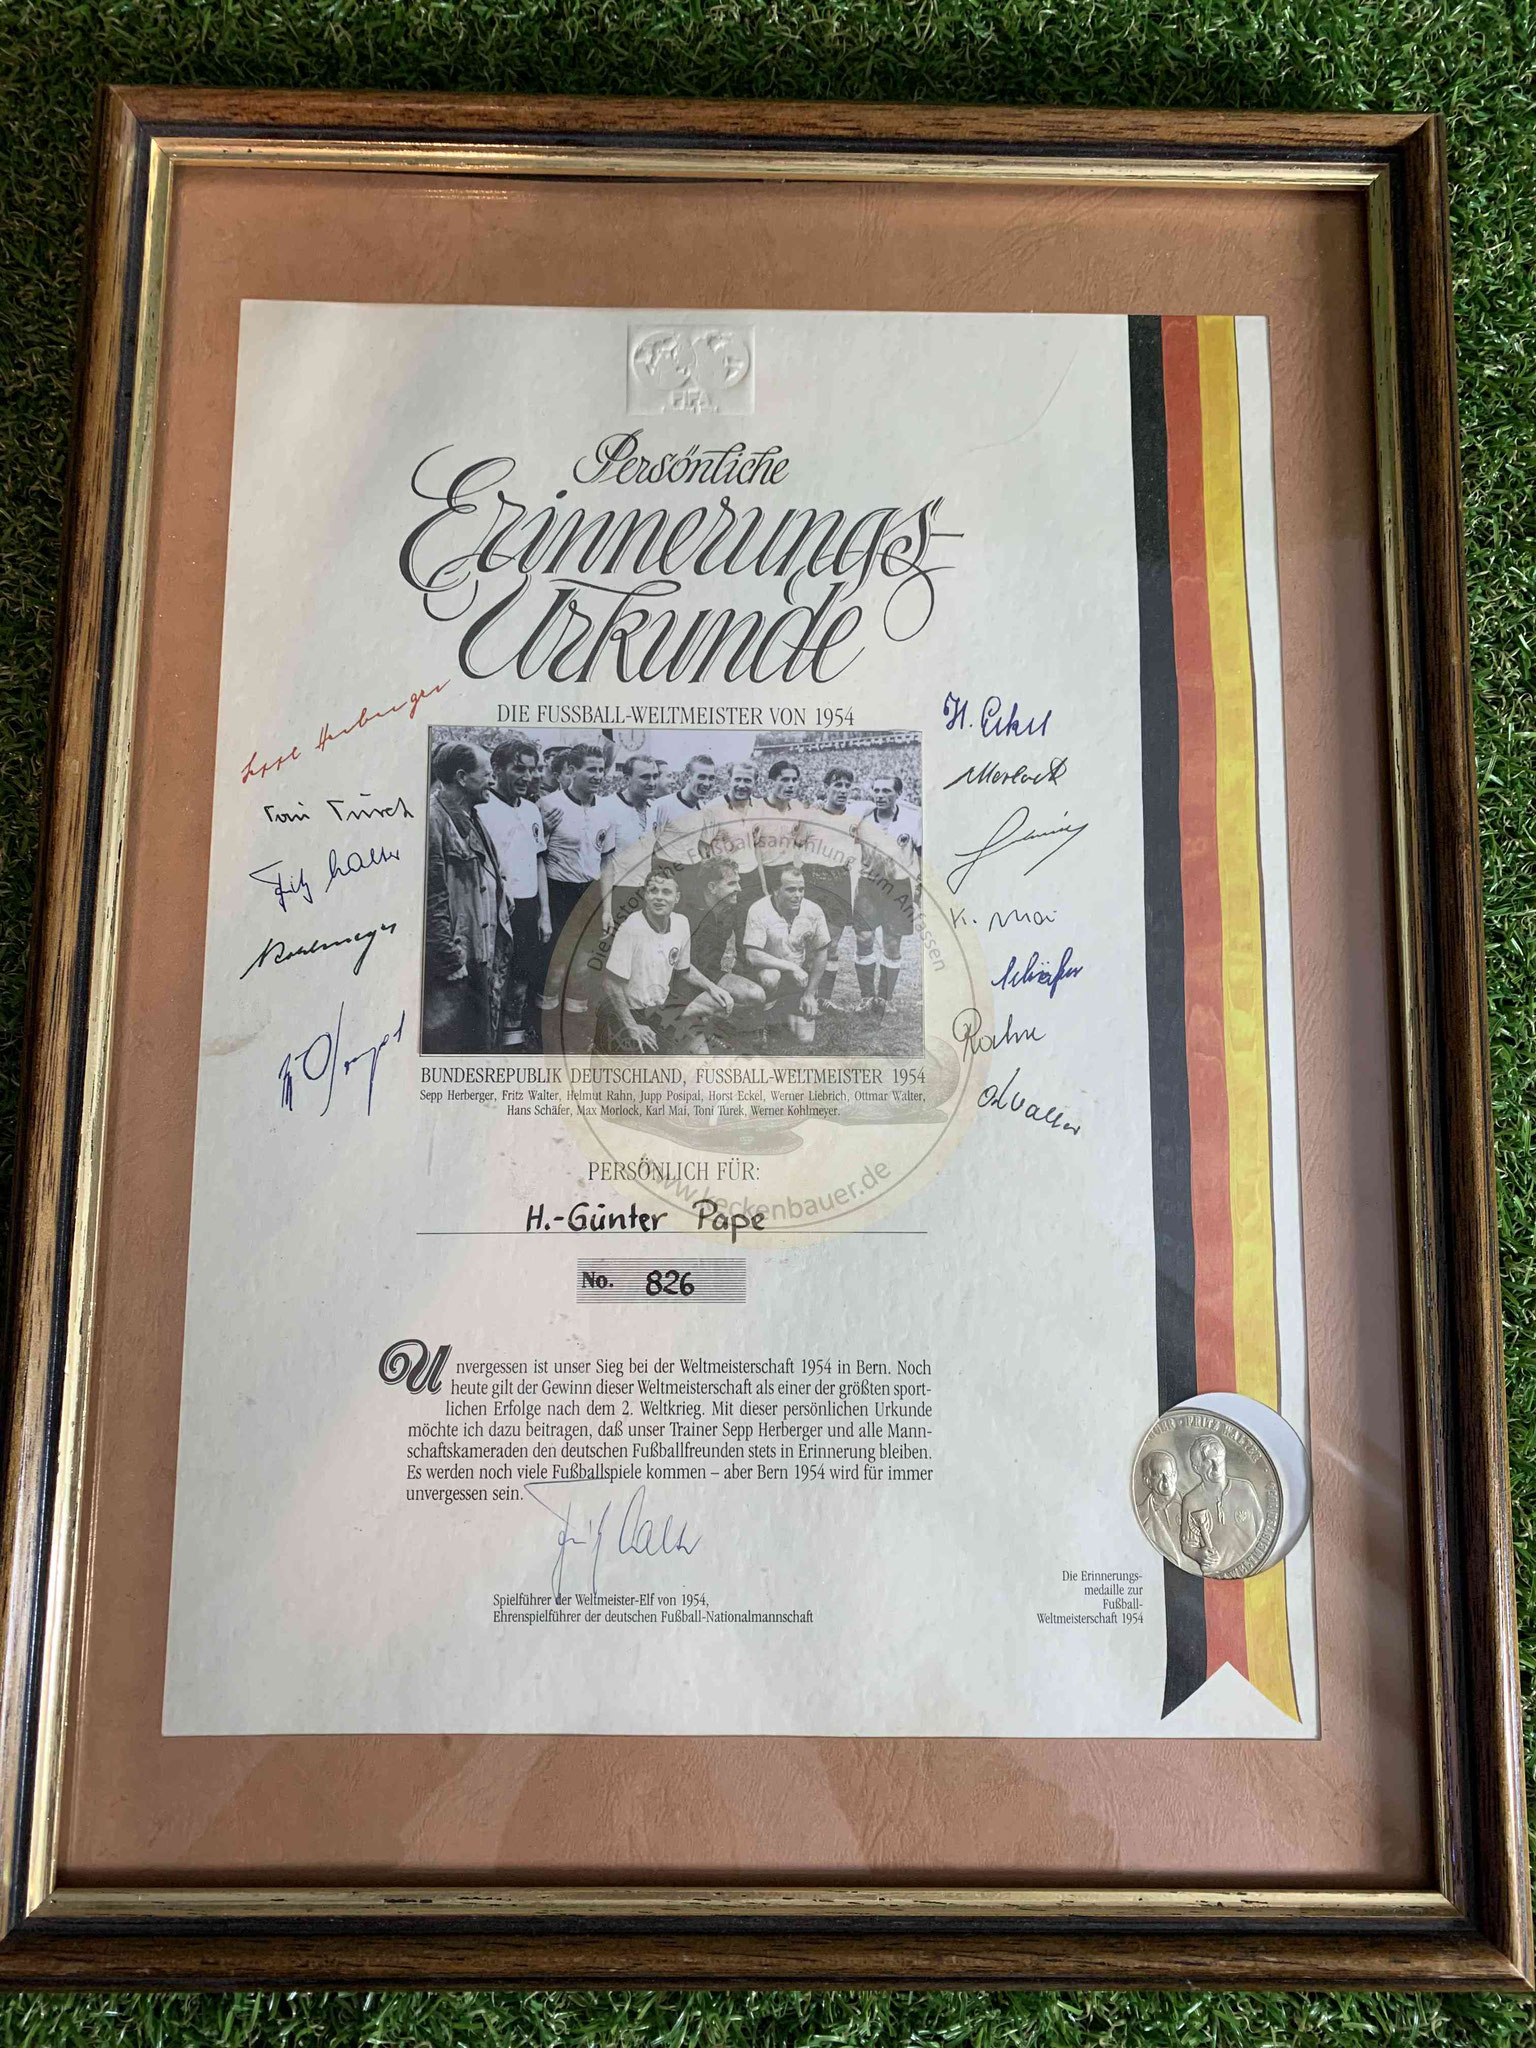 Erinnerungsurkunde mit den Unterschriften der Weltmeister von 1954 inkl. Sammelmünze.